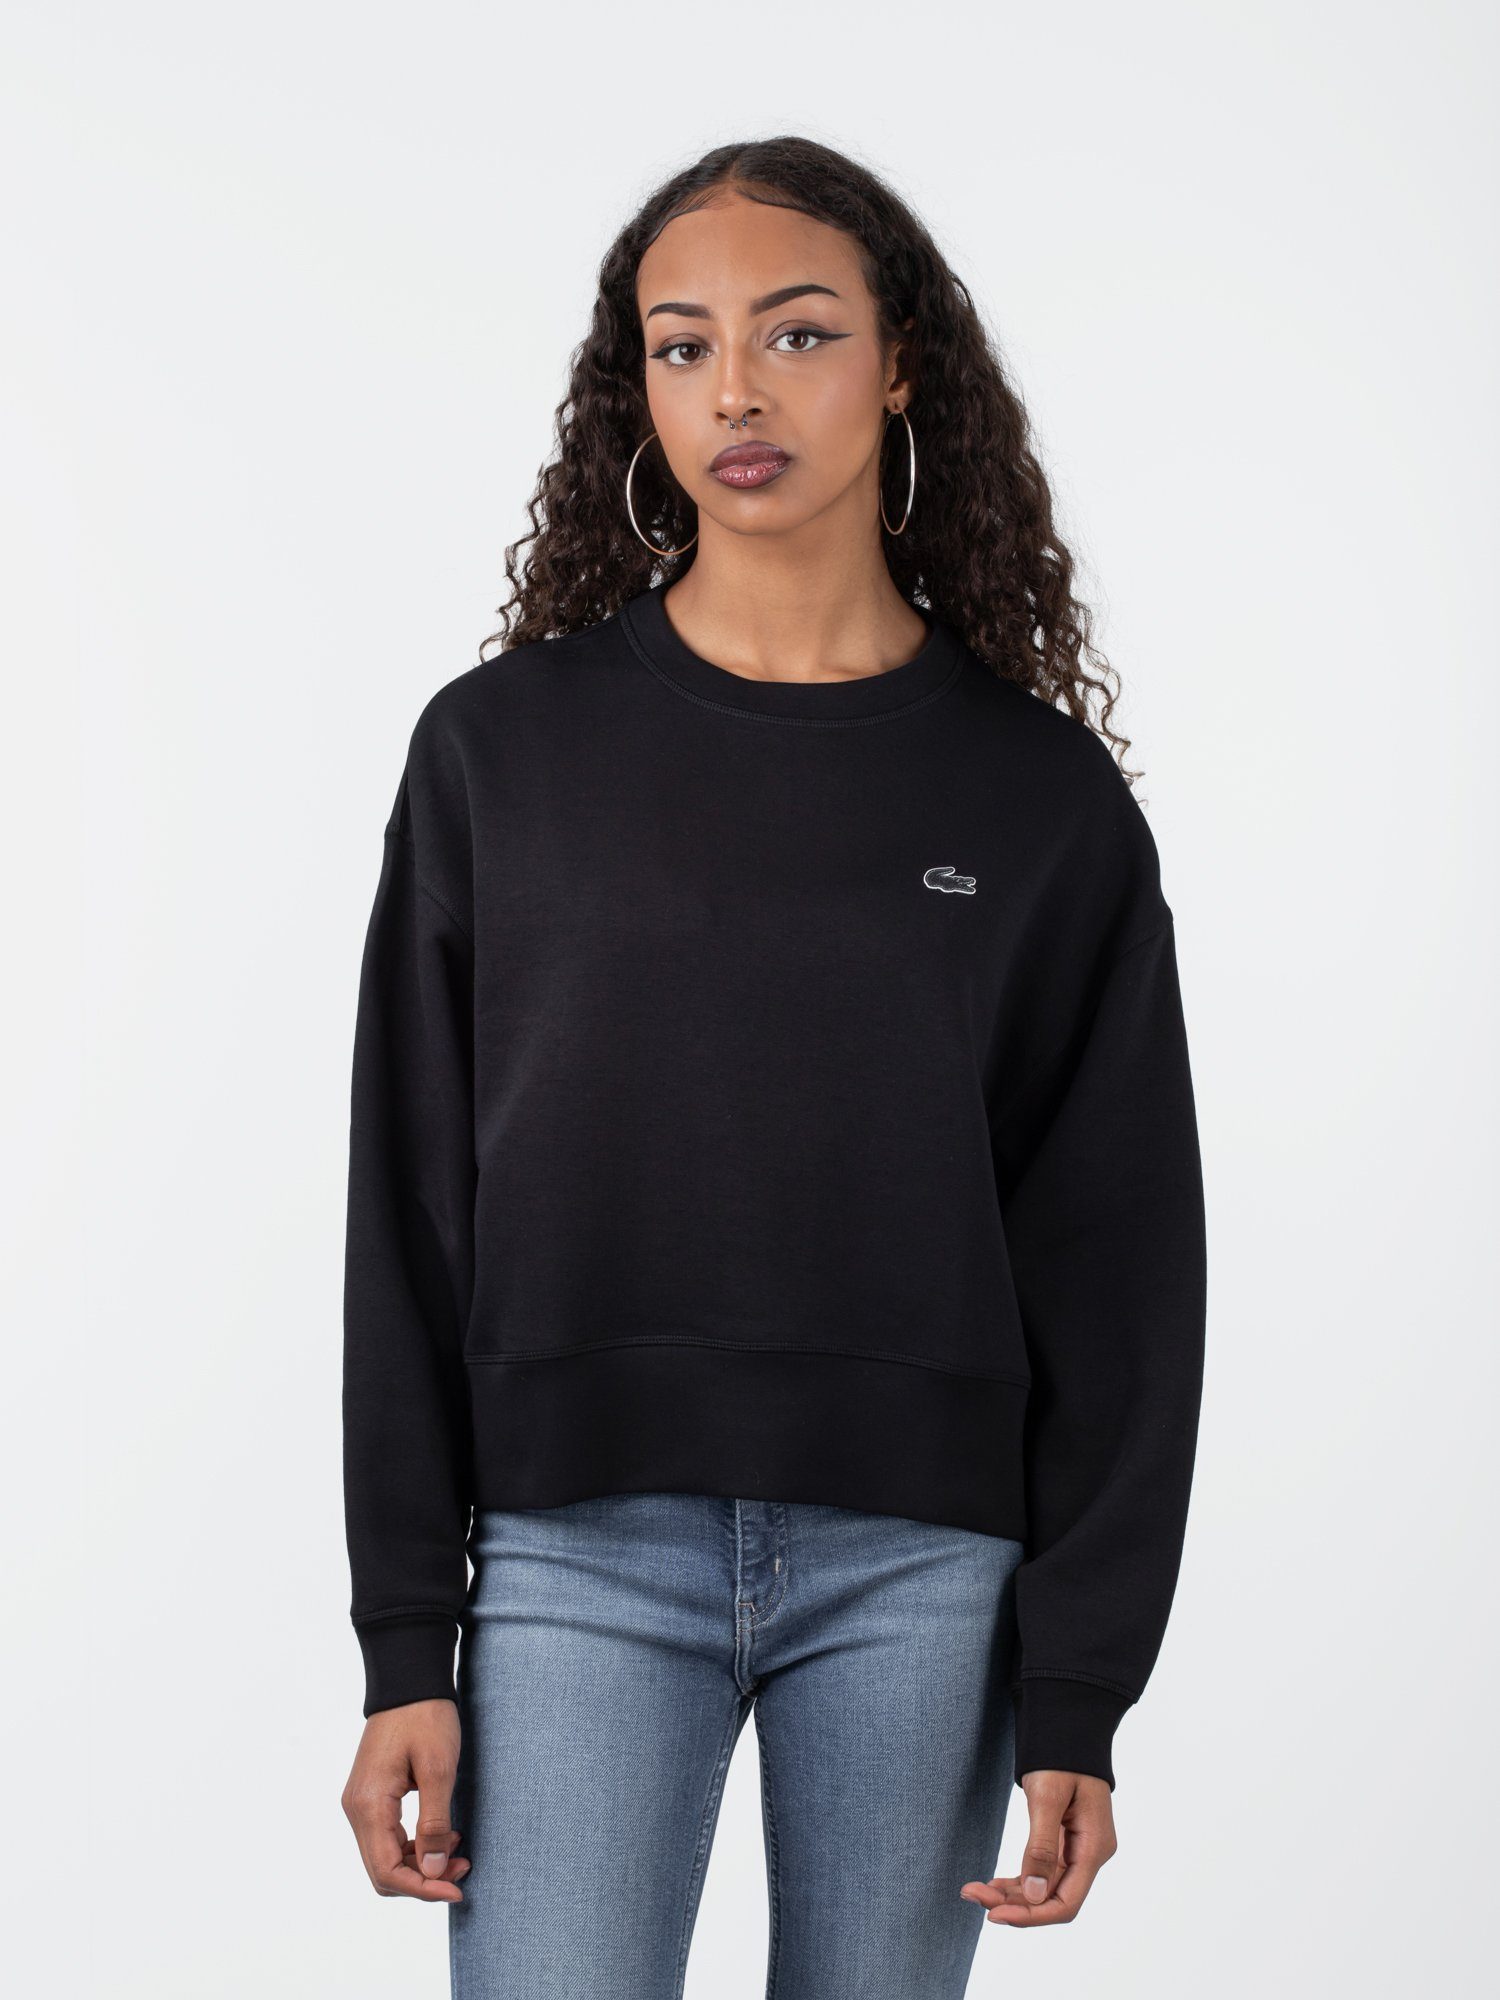 Lacoste Sweatshirt Sweater Lacoste Logo Jogger